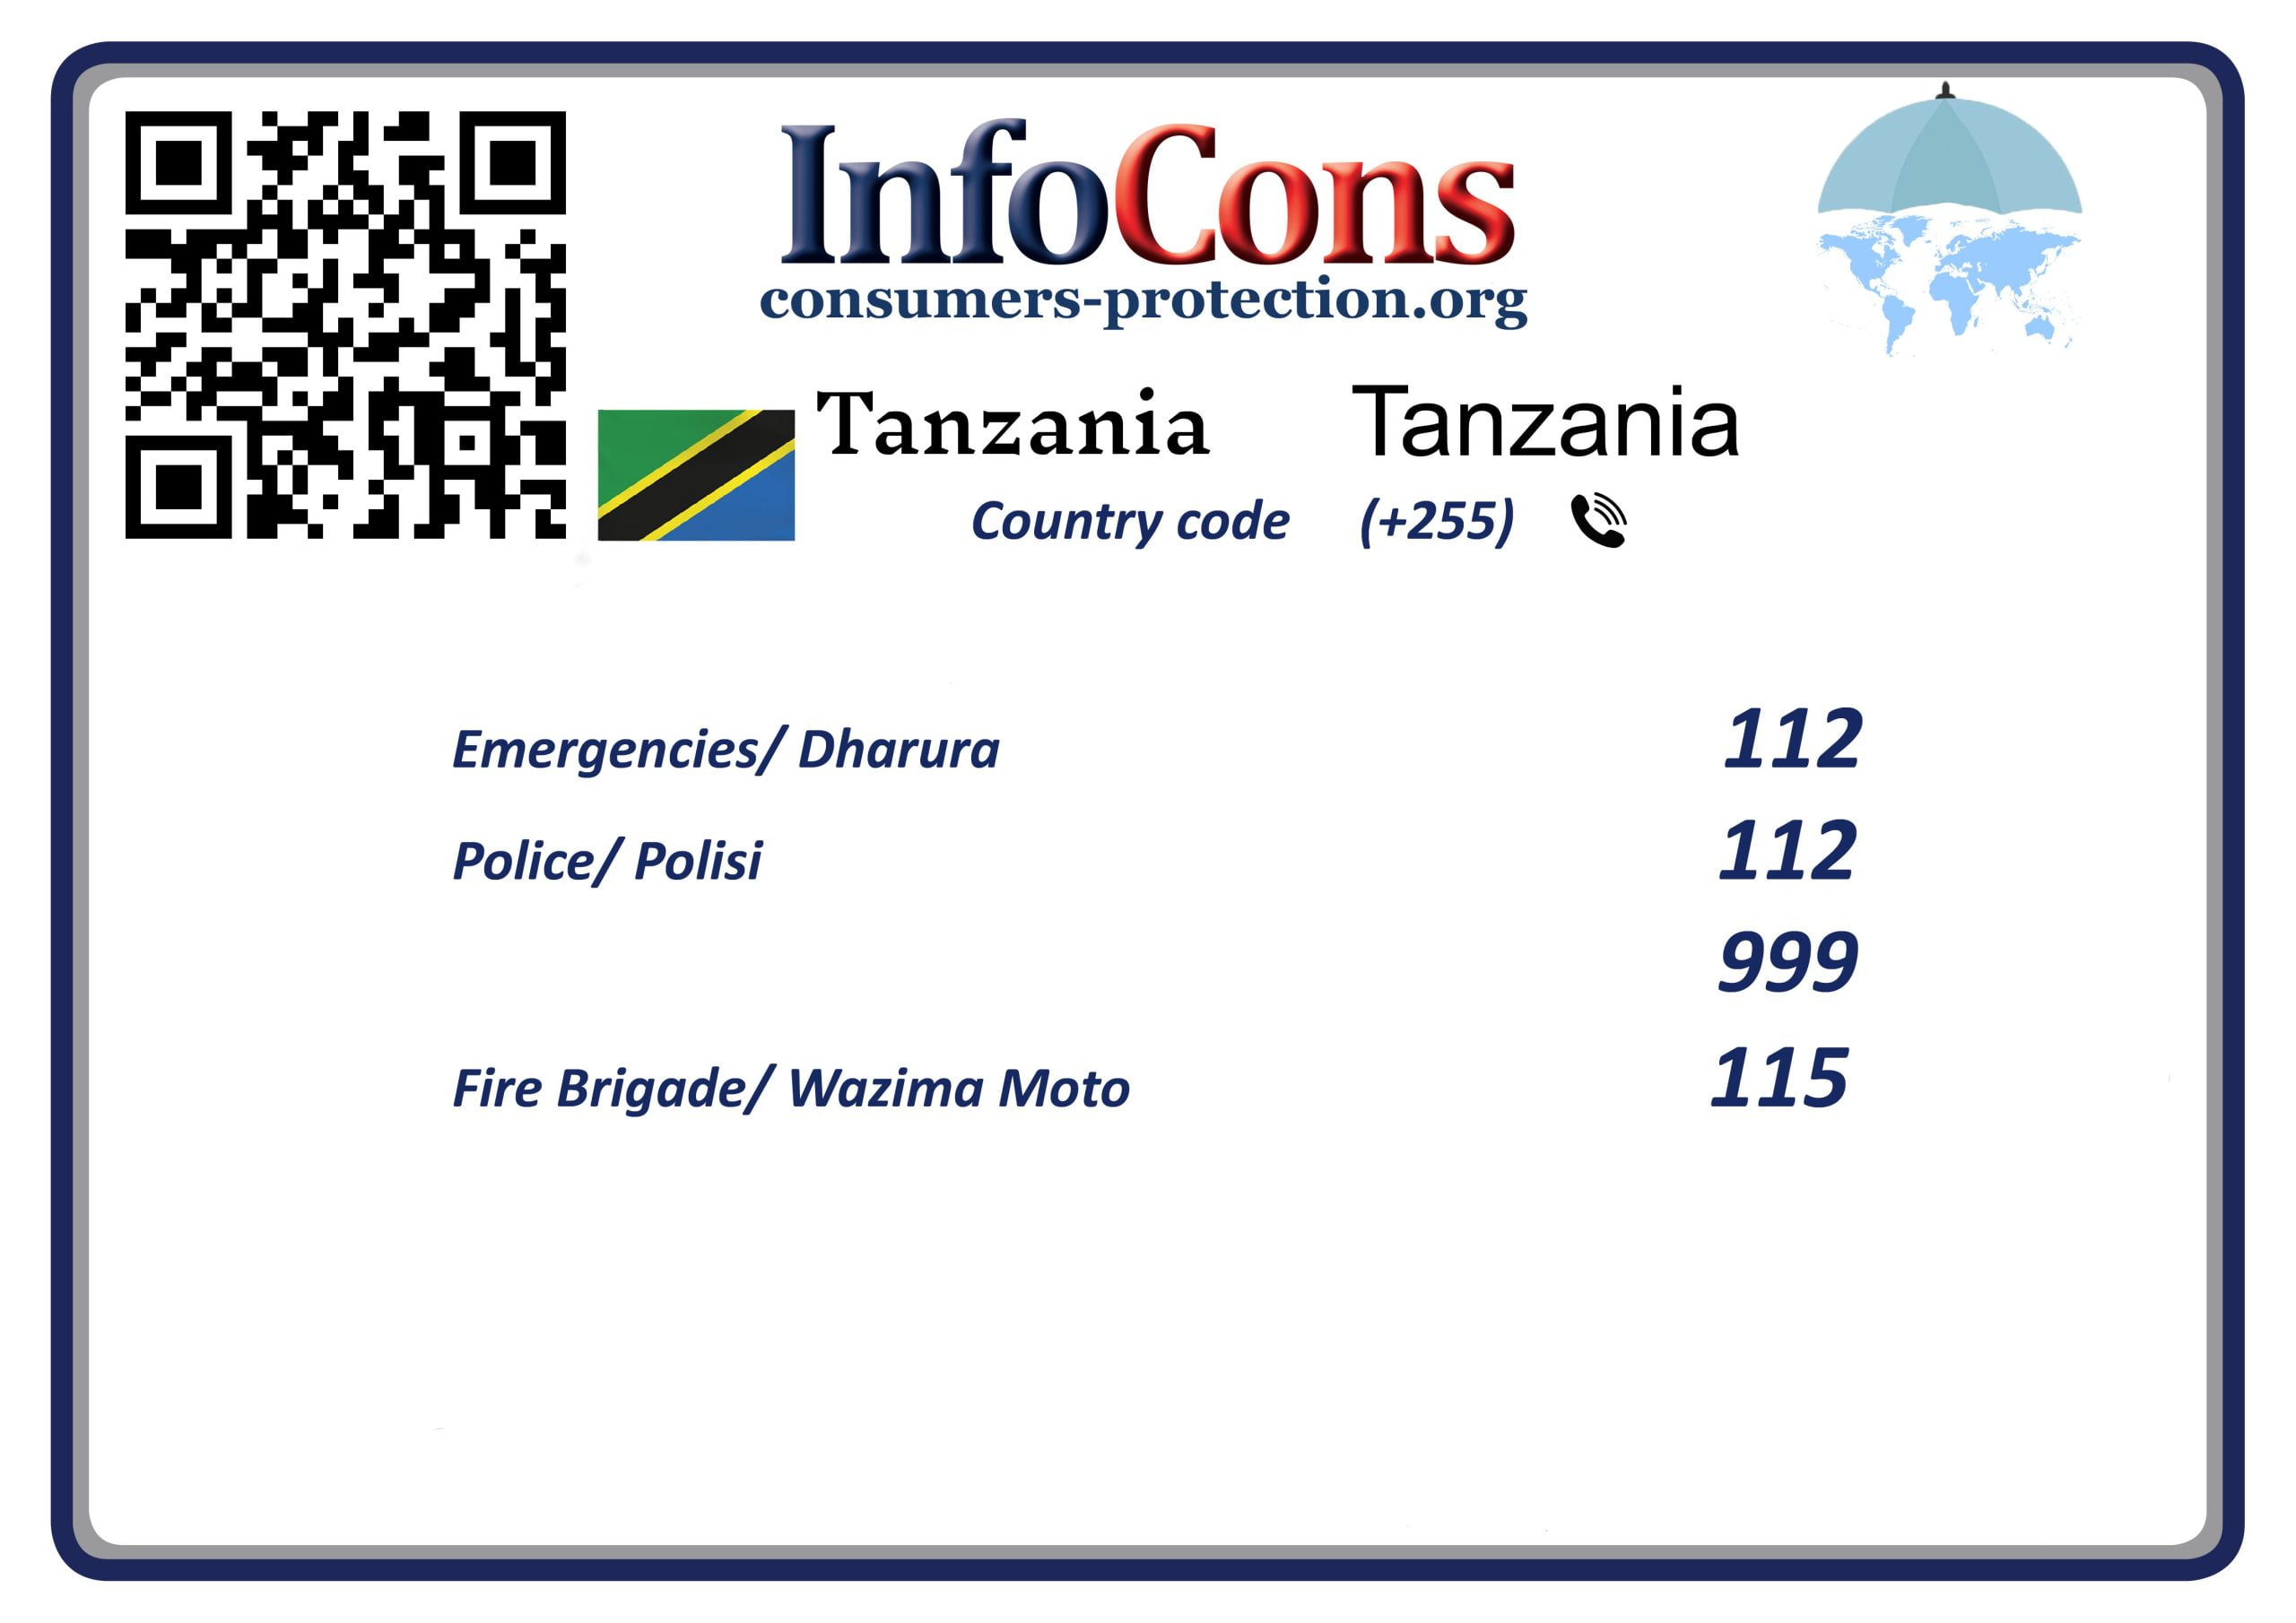 Ulinzi wa Watumiaji Tanzania - Consumers Protection Tanzania